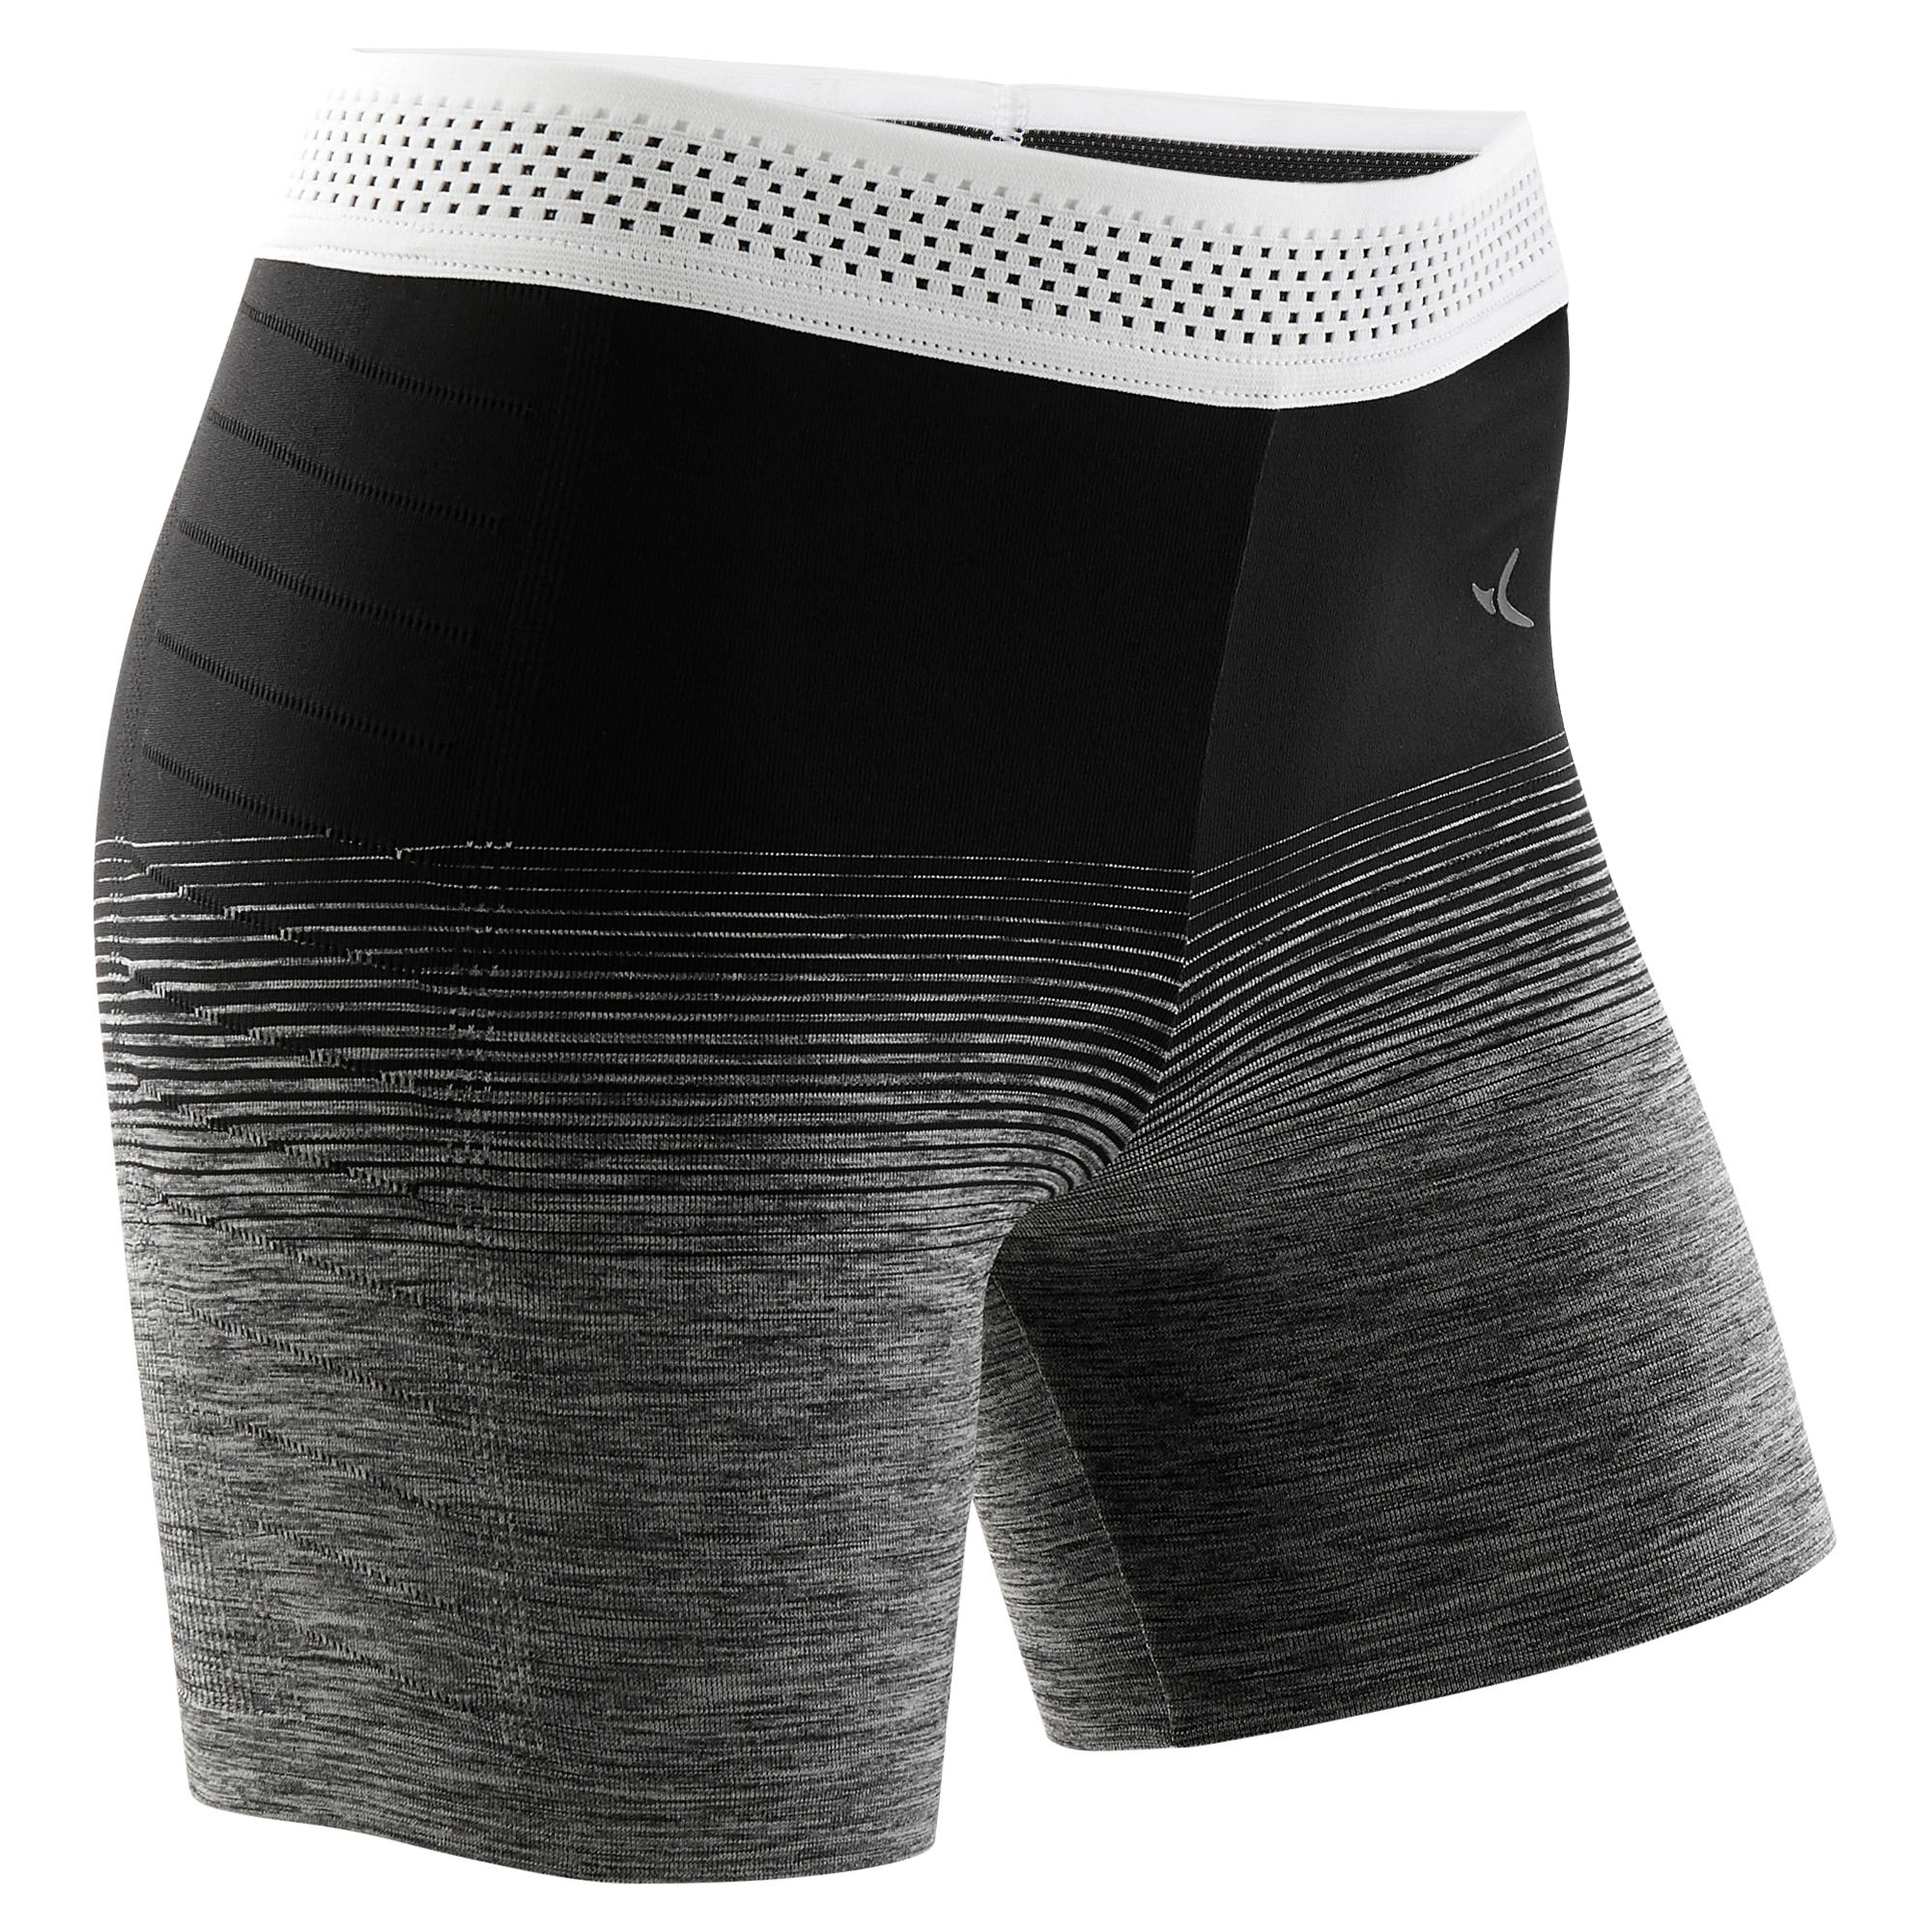 Pantalon scurt S900 educație fizică fără cusături negru-alb fete La Oferta Online decathlon imagine La Oferta Online